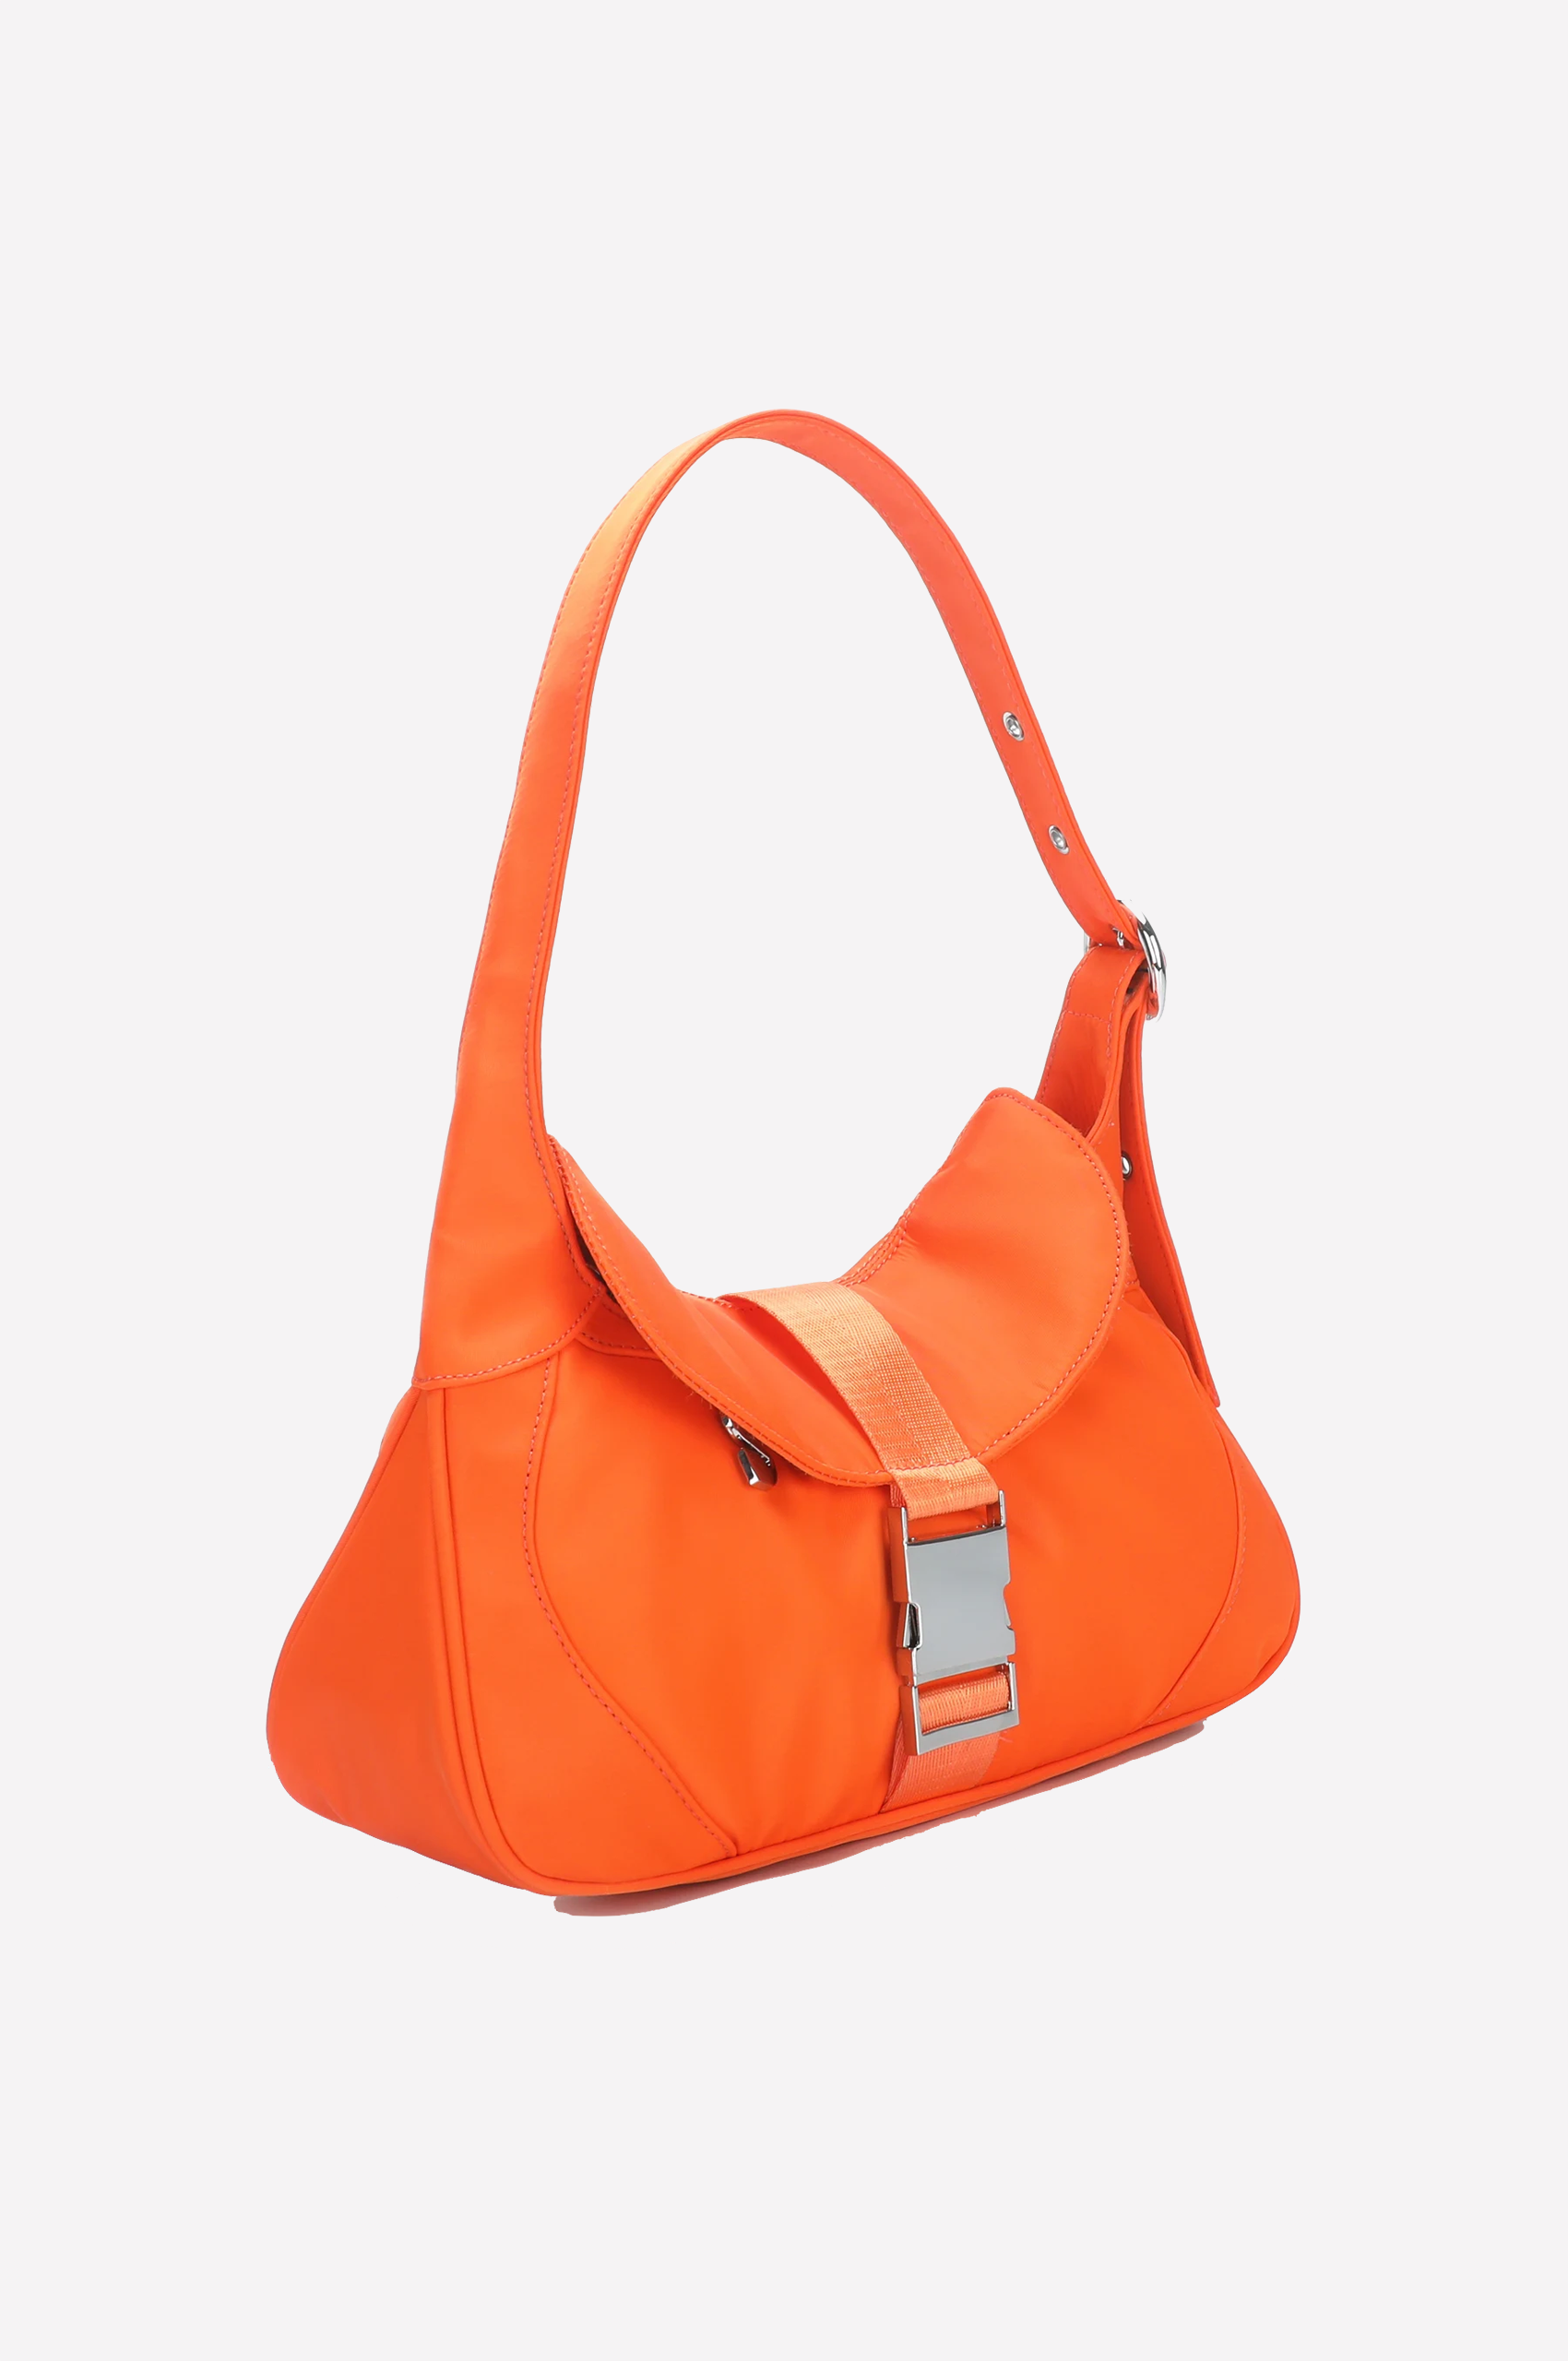 SILFEN Thea Handtasche in Orange, Ansicht Seite